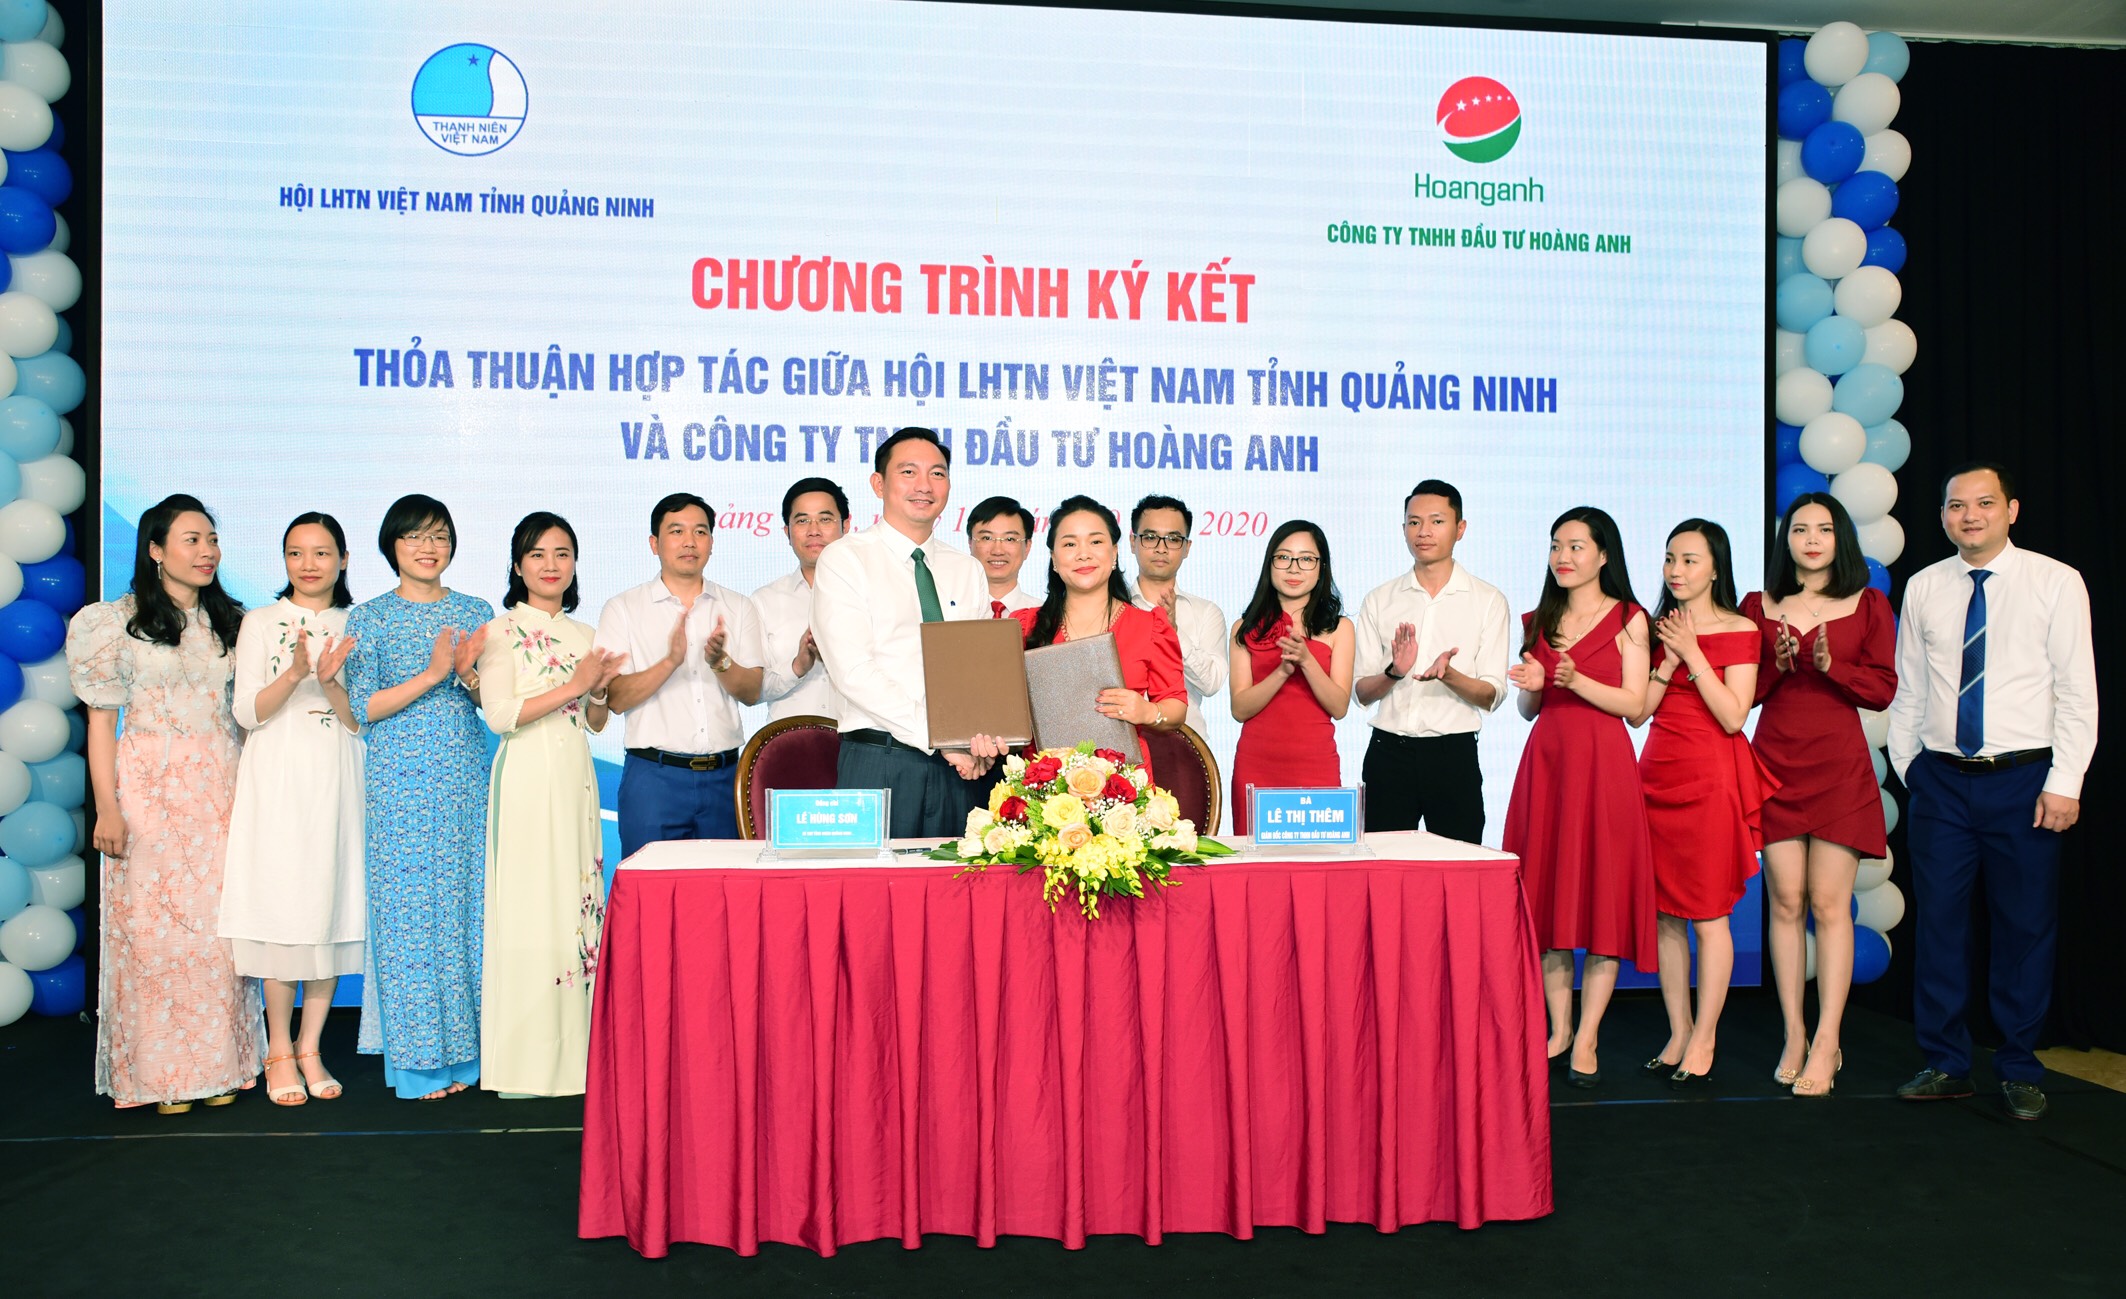 Hội LHTN Việt Nam tỉnh Quảng Ninh và Công ty TNHH Đầu tư Hoàng Anh ký kết chương trình phối hợp giai đoạn 2020 - 2022